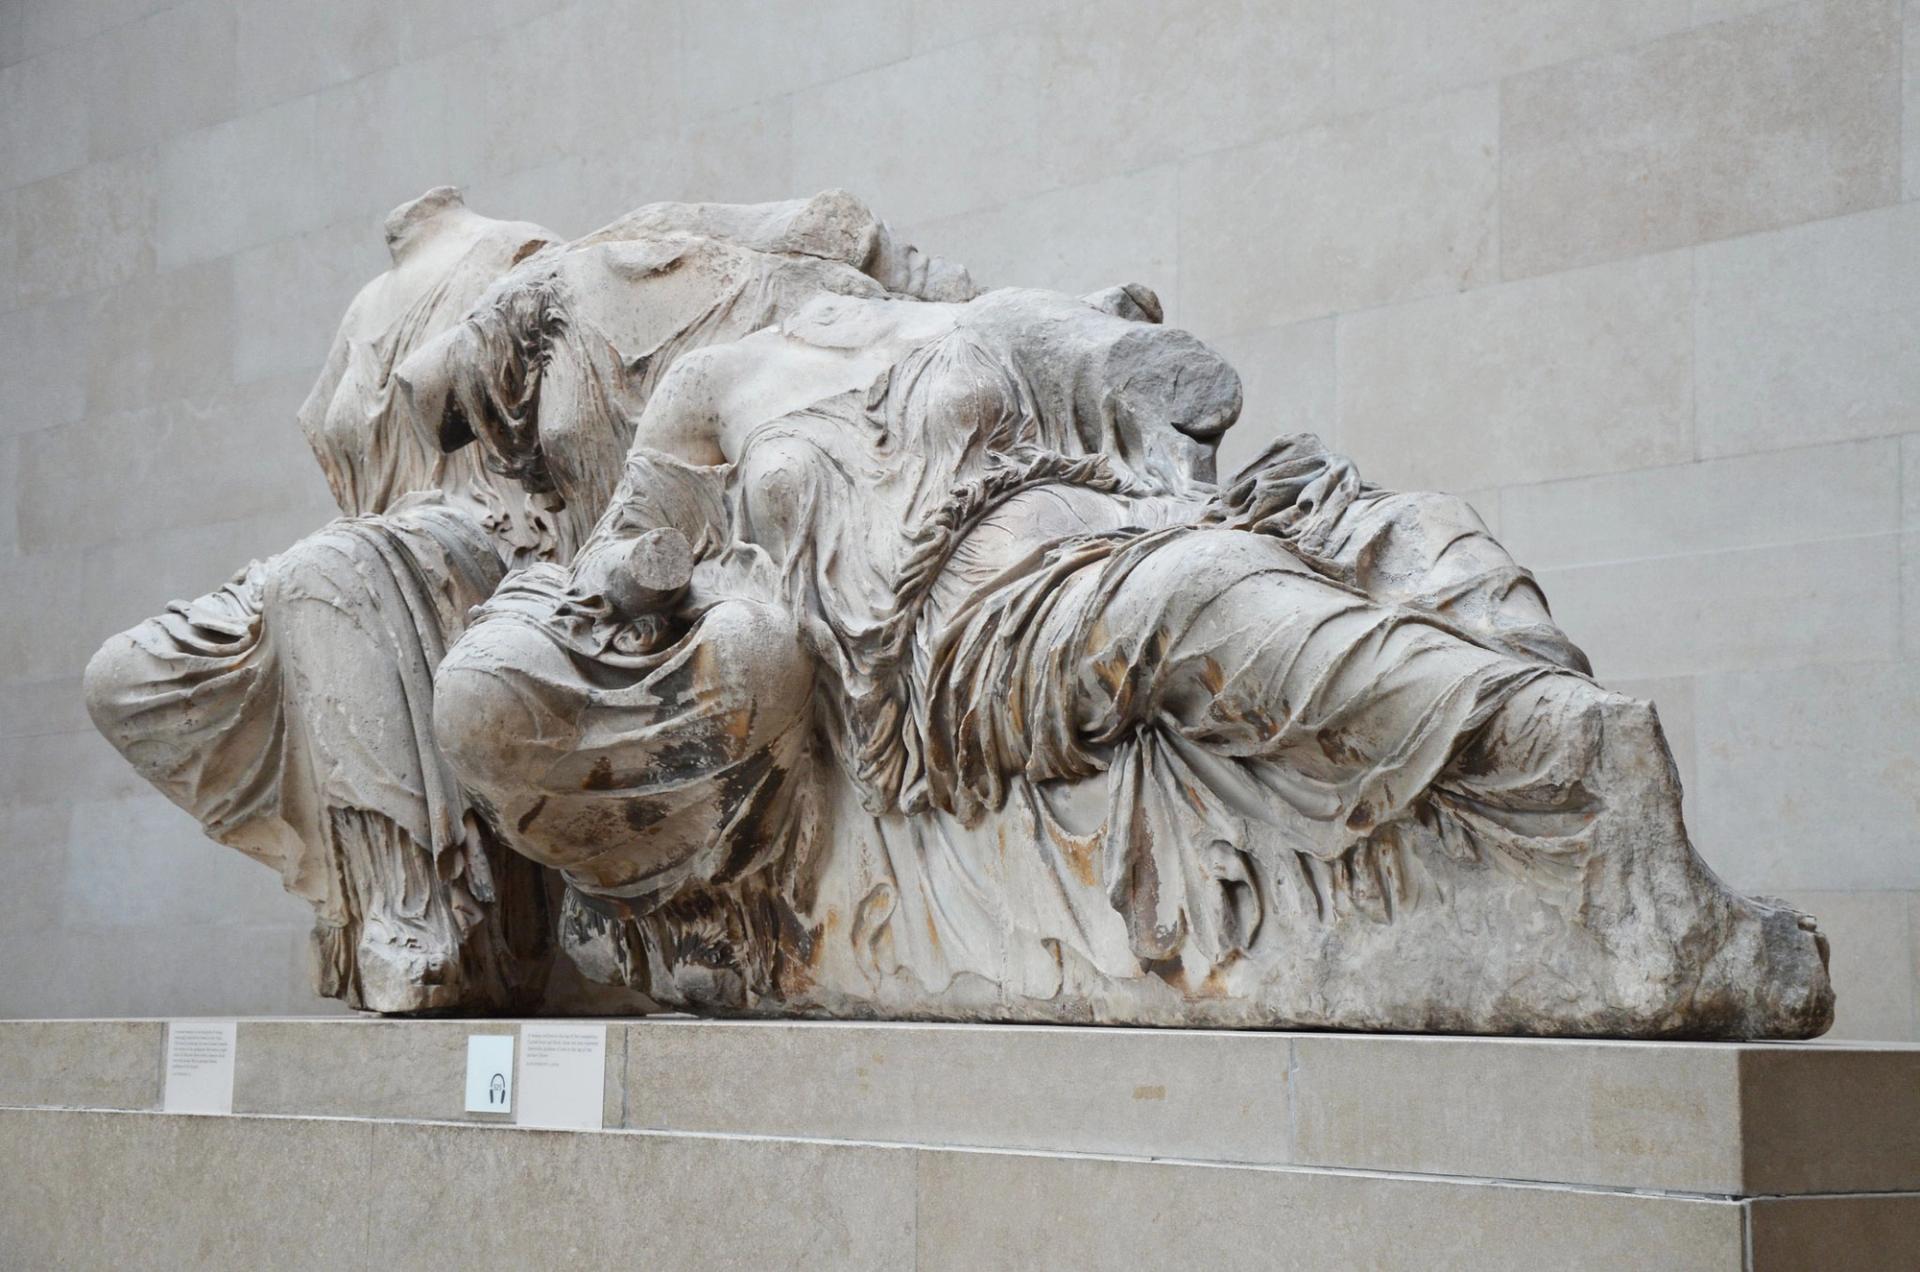 希腊和英国在英国博物馆的帕台农大理石之间存在一场长期争执